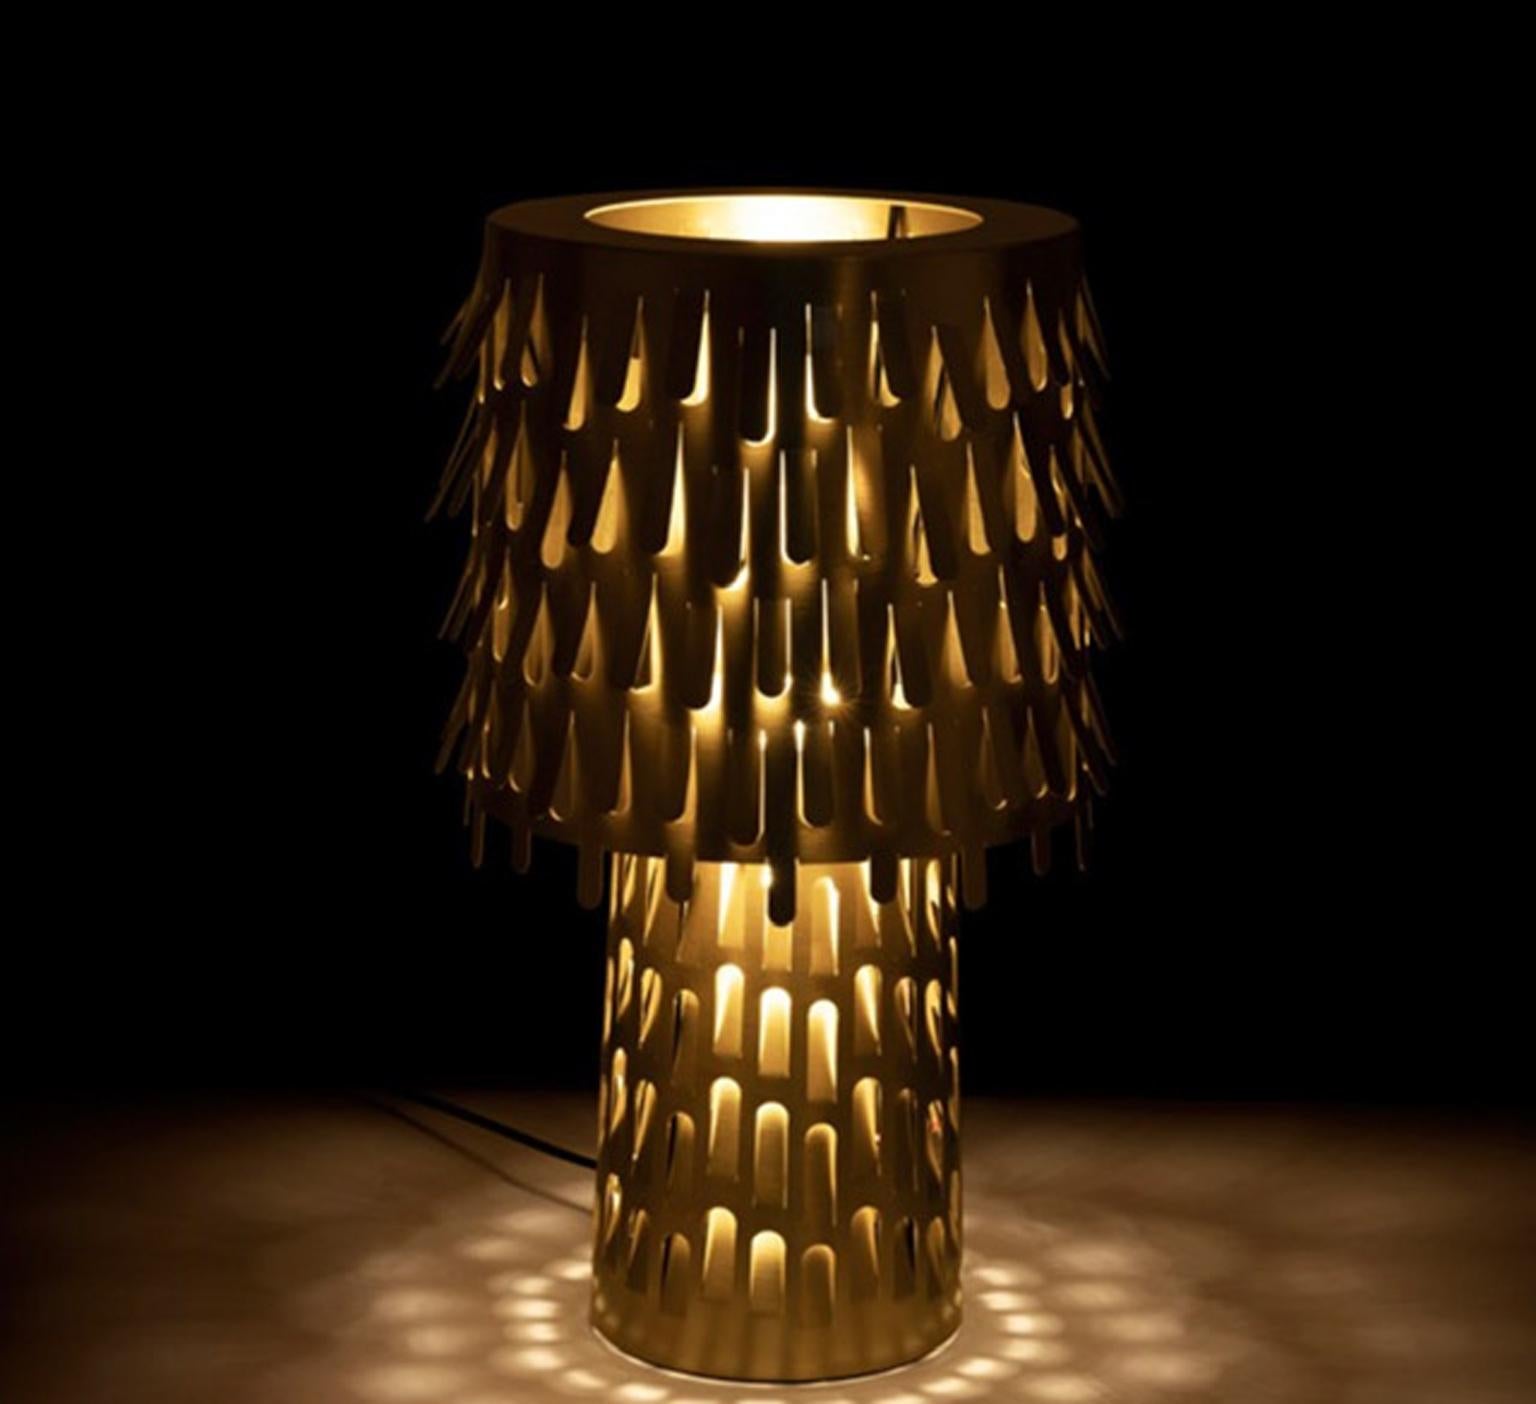 Atemberaubende Tischlampe aus Messing, entworfen von den Campana Brothers und völlig  hergestellt in Italien von Ghidini 1961, einer historischen Messingfabrik.

Die perforierte Struktur und die Öffnung des metallenen Lampenschirms erzeugen eine